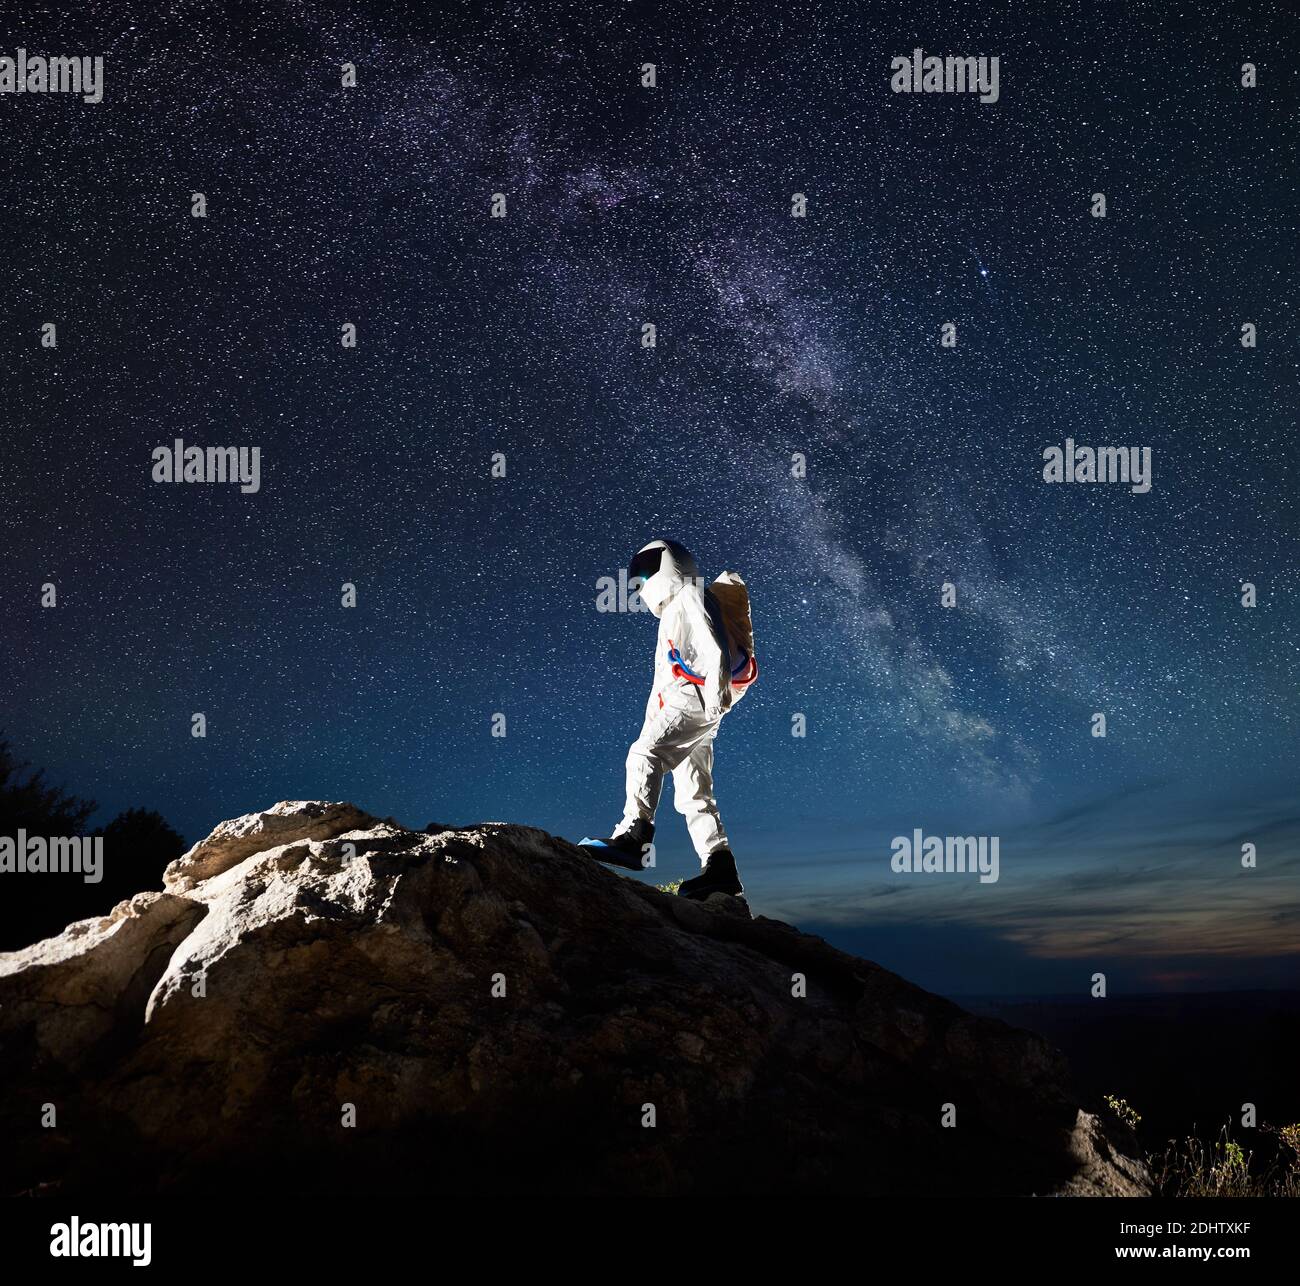 Viajero espacial escalando montaña rocosa bajo el impresionante cielo  nocturno con estrellas y vía Láctea. Astronauta en traje espacial que llega  a la cima de la roca enorme. Concepto de exploración espacial